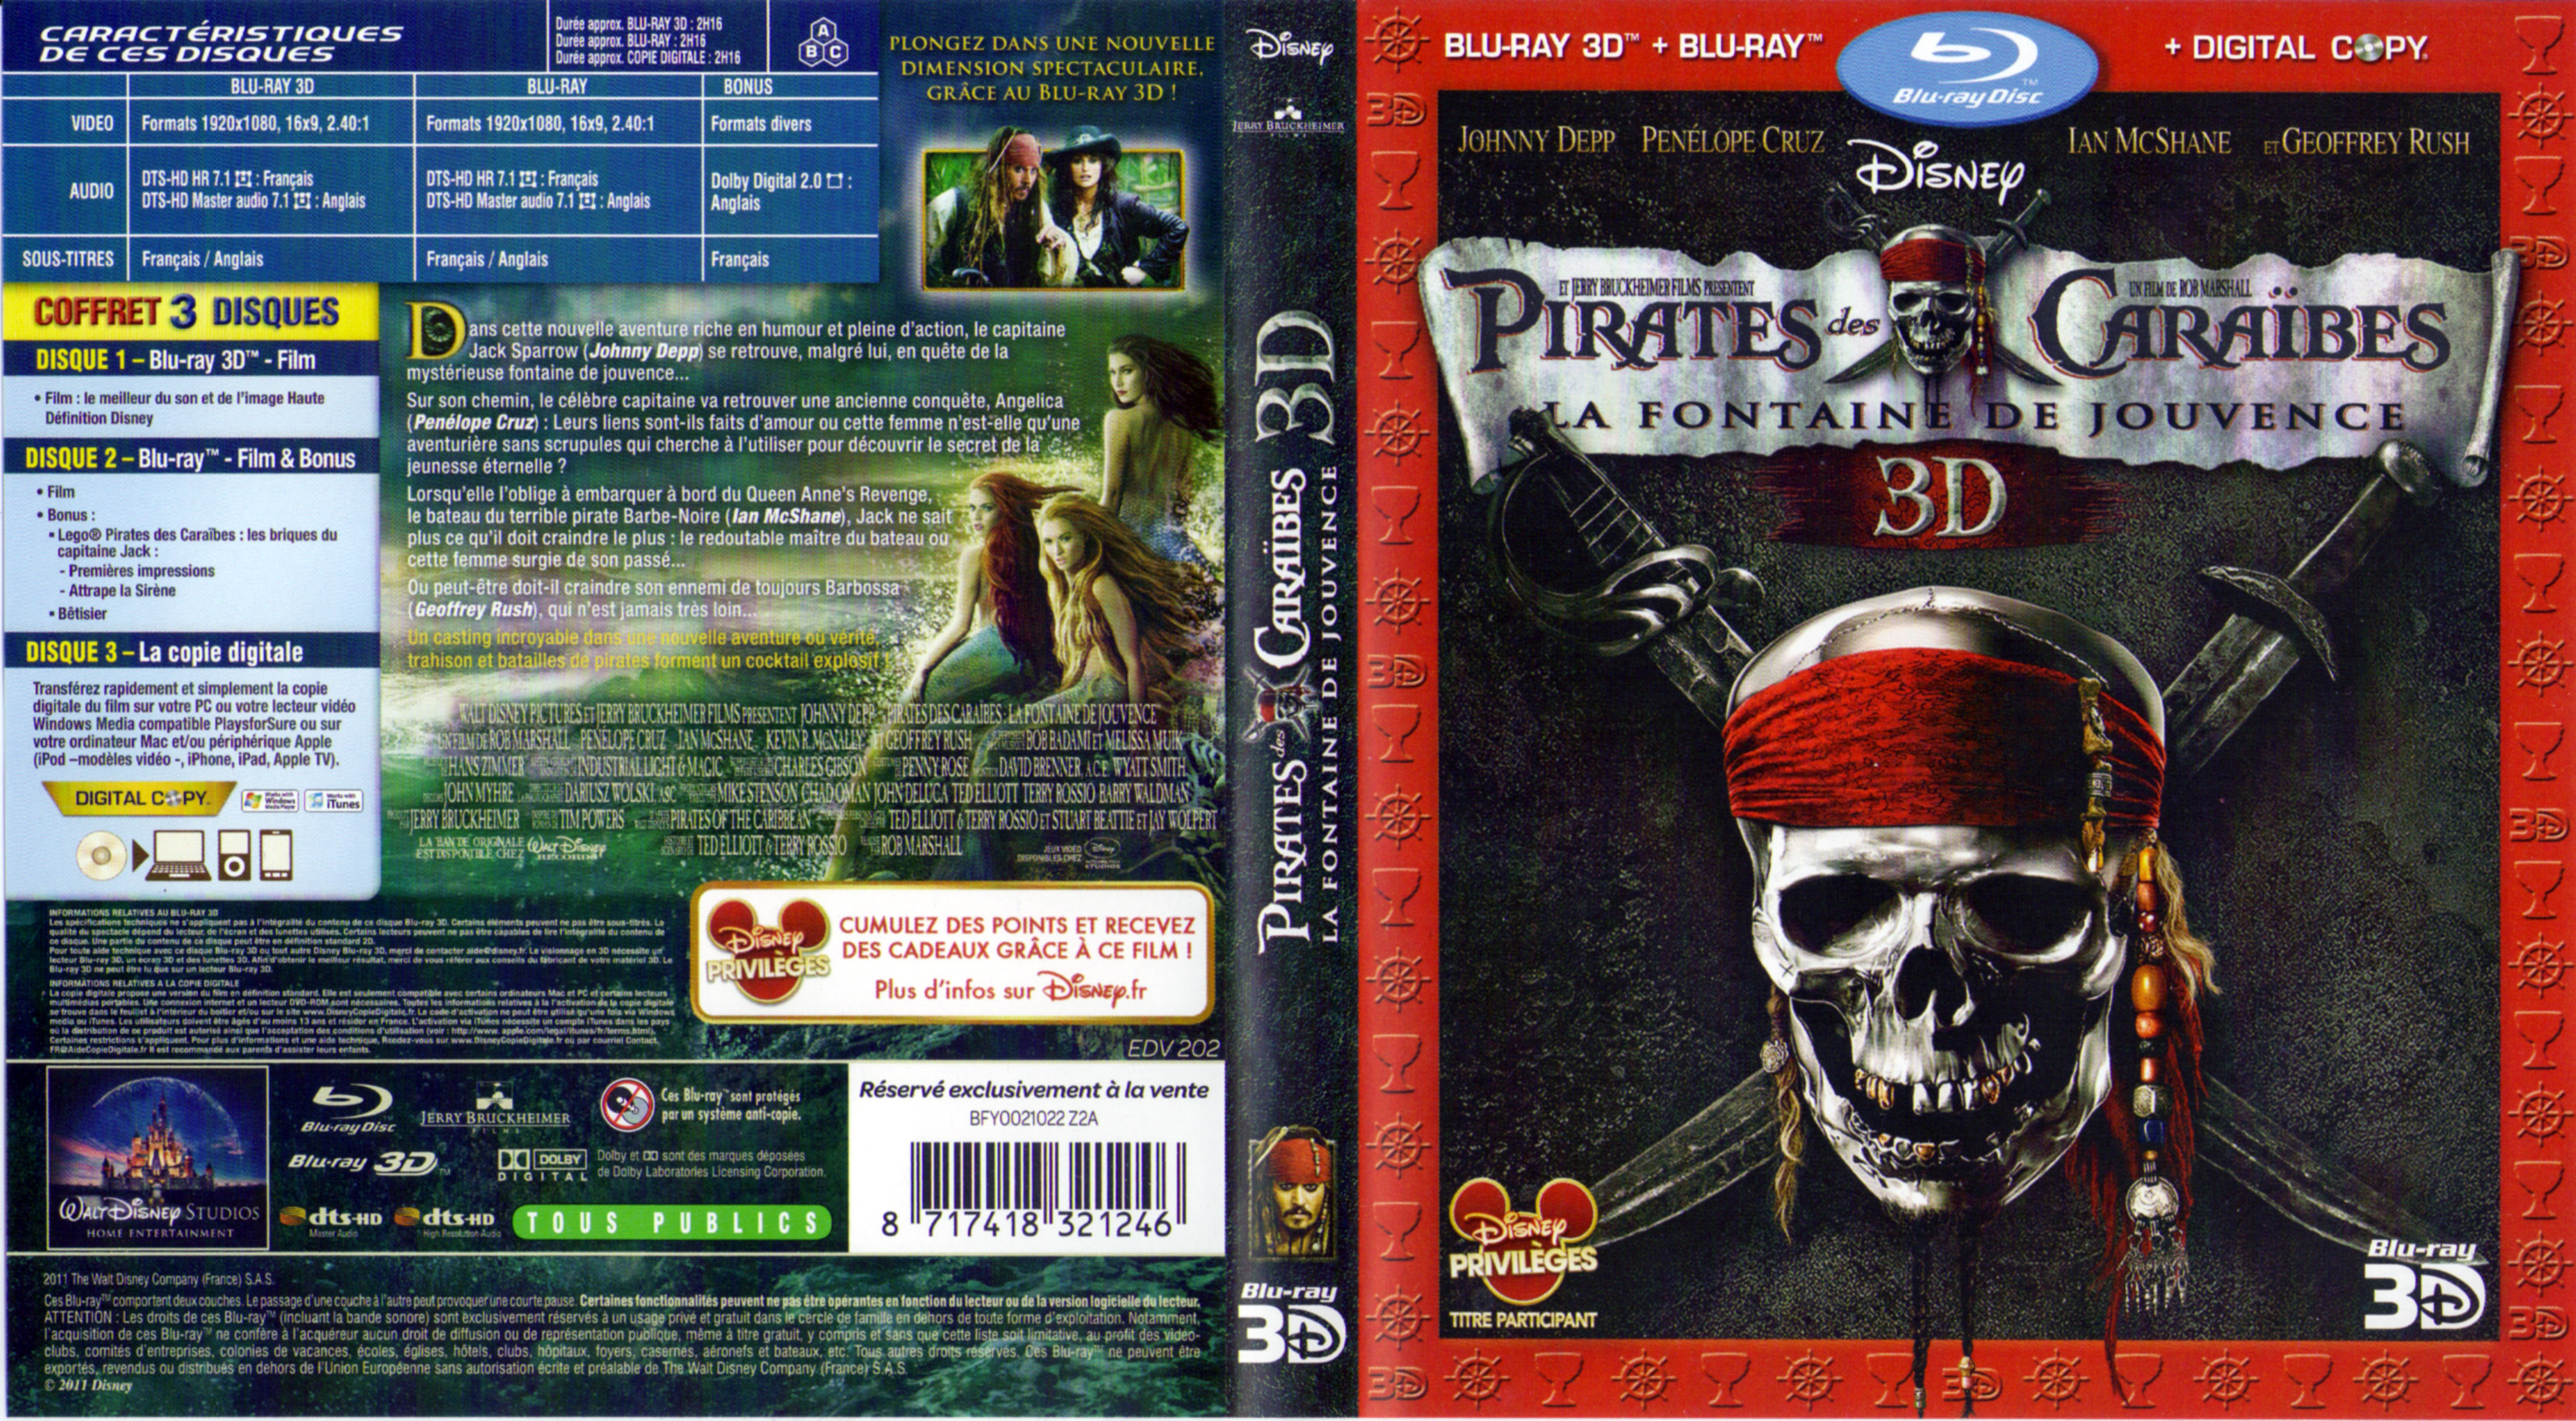 Jaquette DVD Pirates des Caraibes la Fontaine de Jouvence 3D (BLU-RAY)